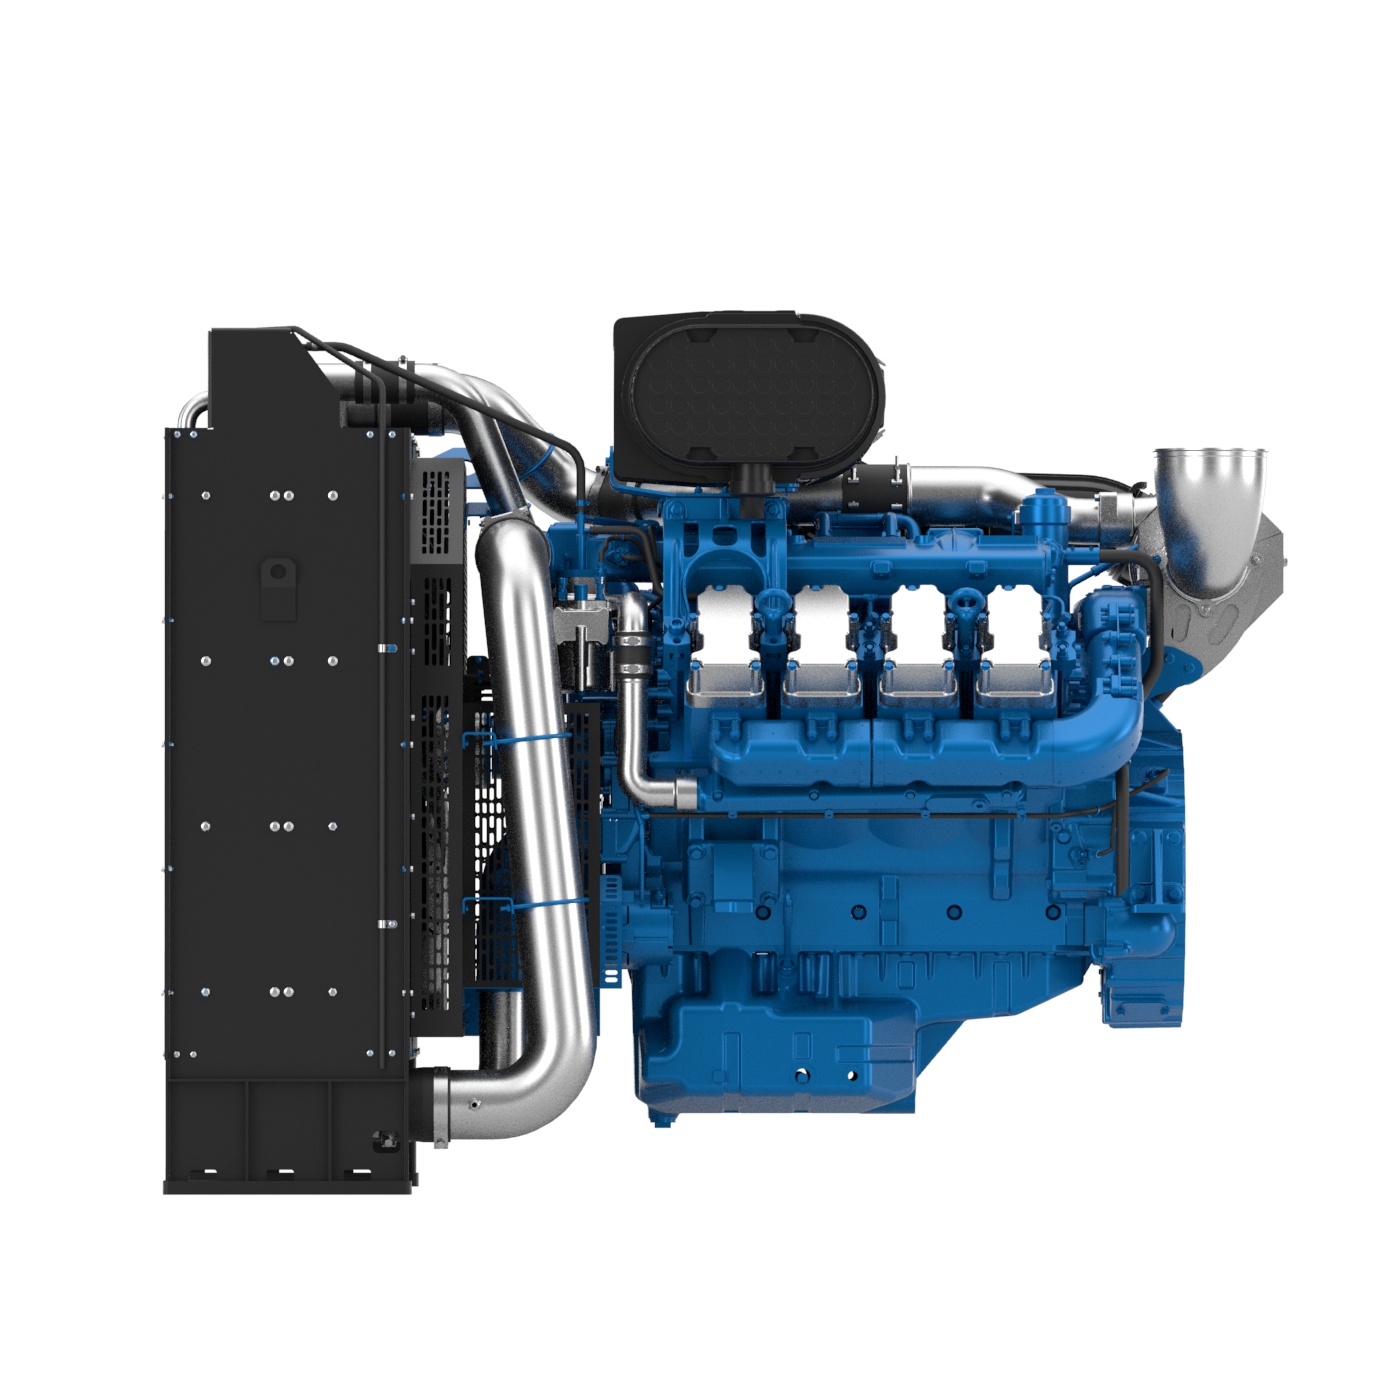 Moteurs Baudouin PowerKit engine 8M21